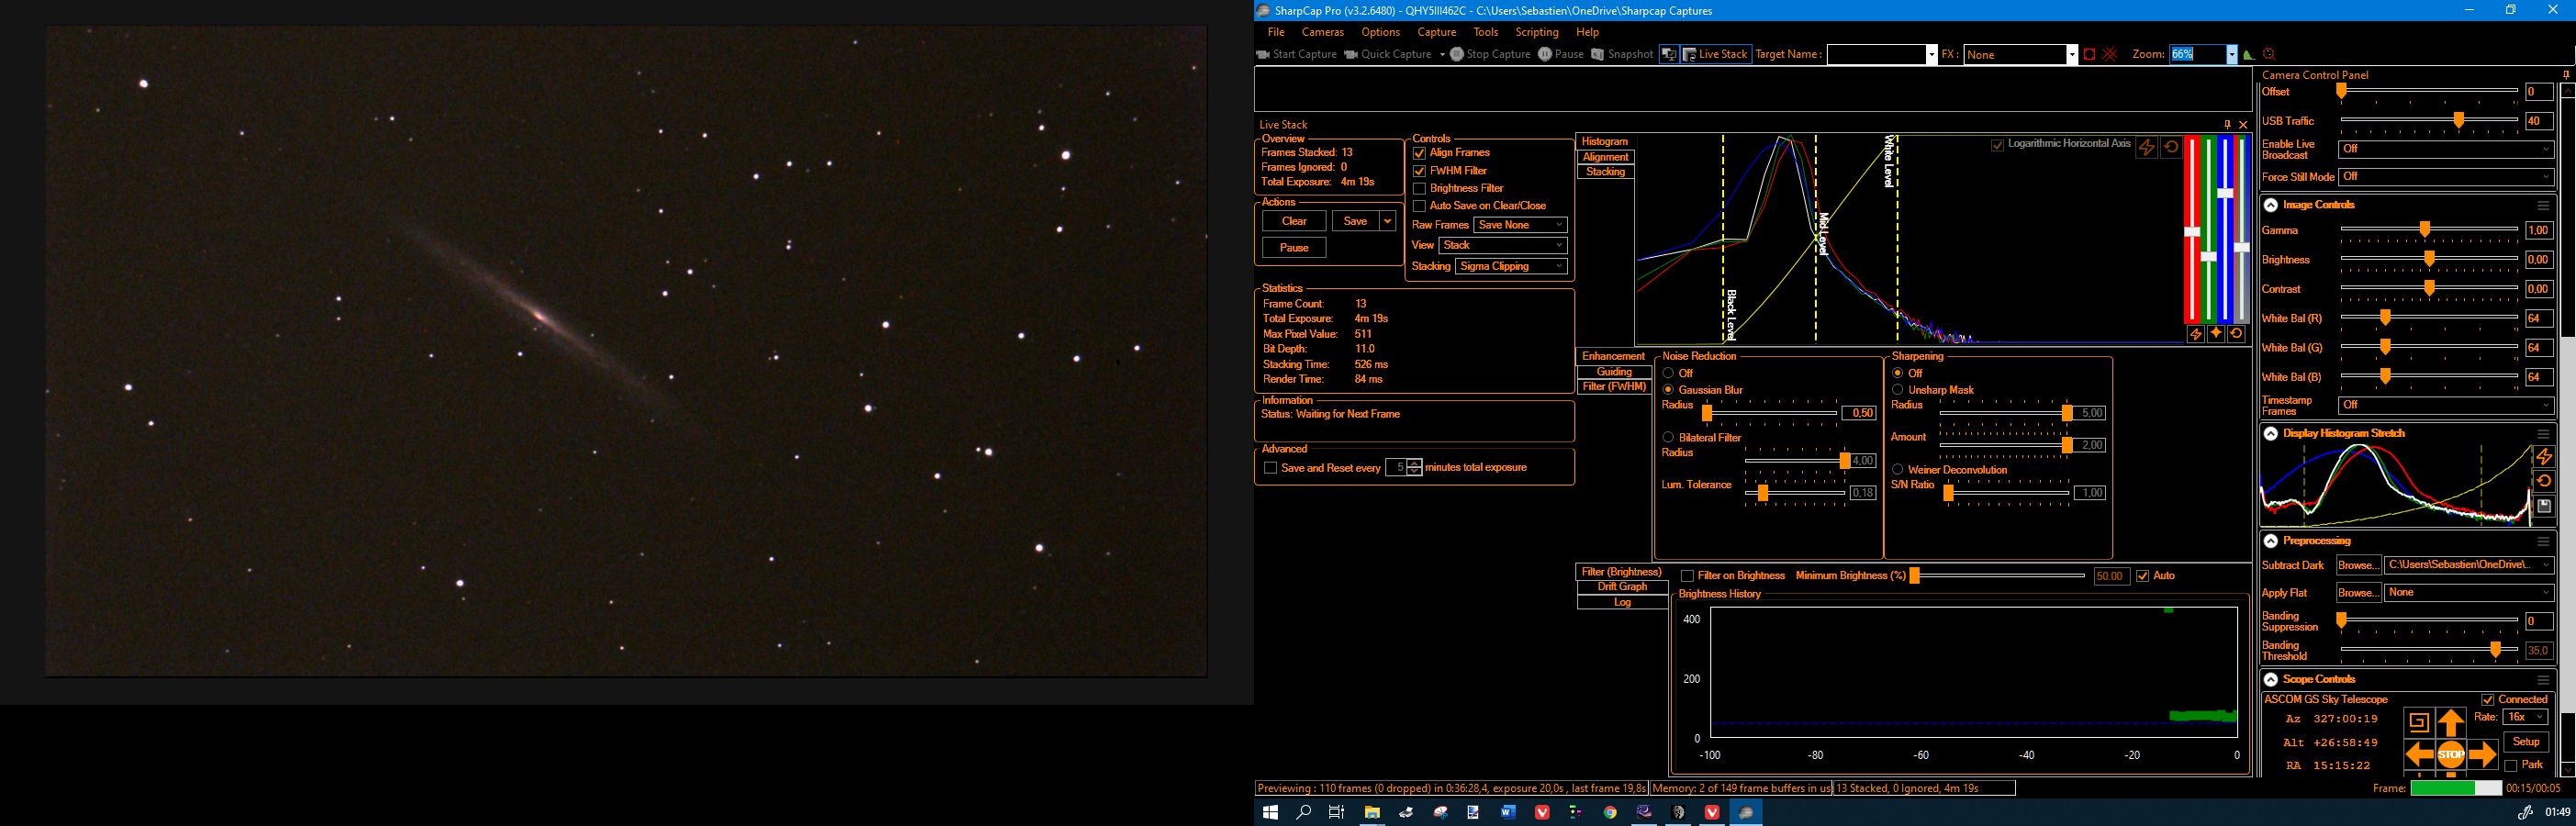 NGC 5906